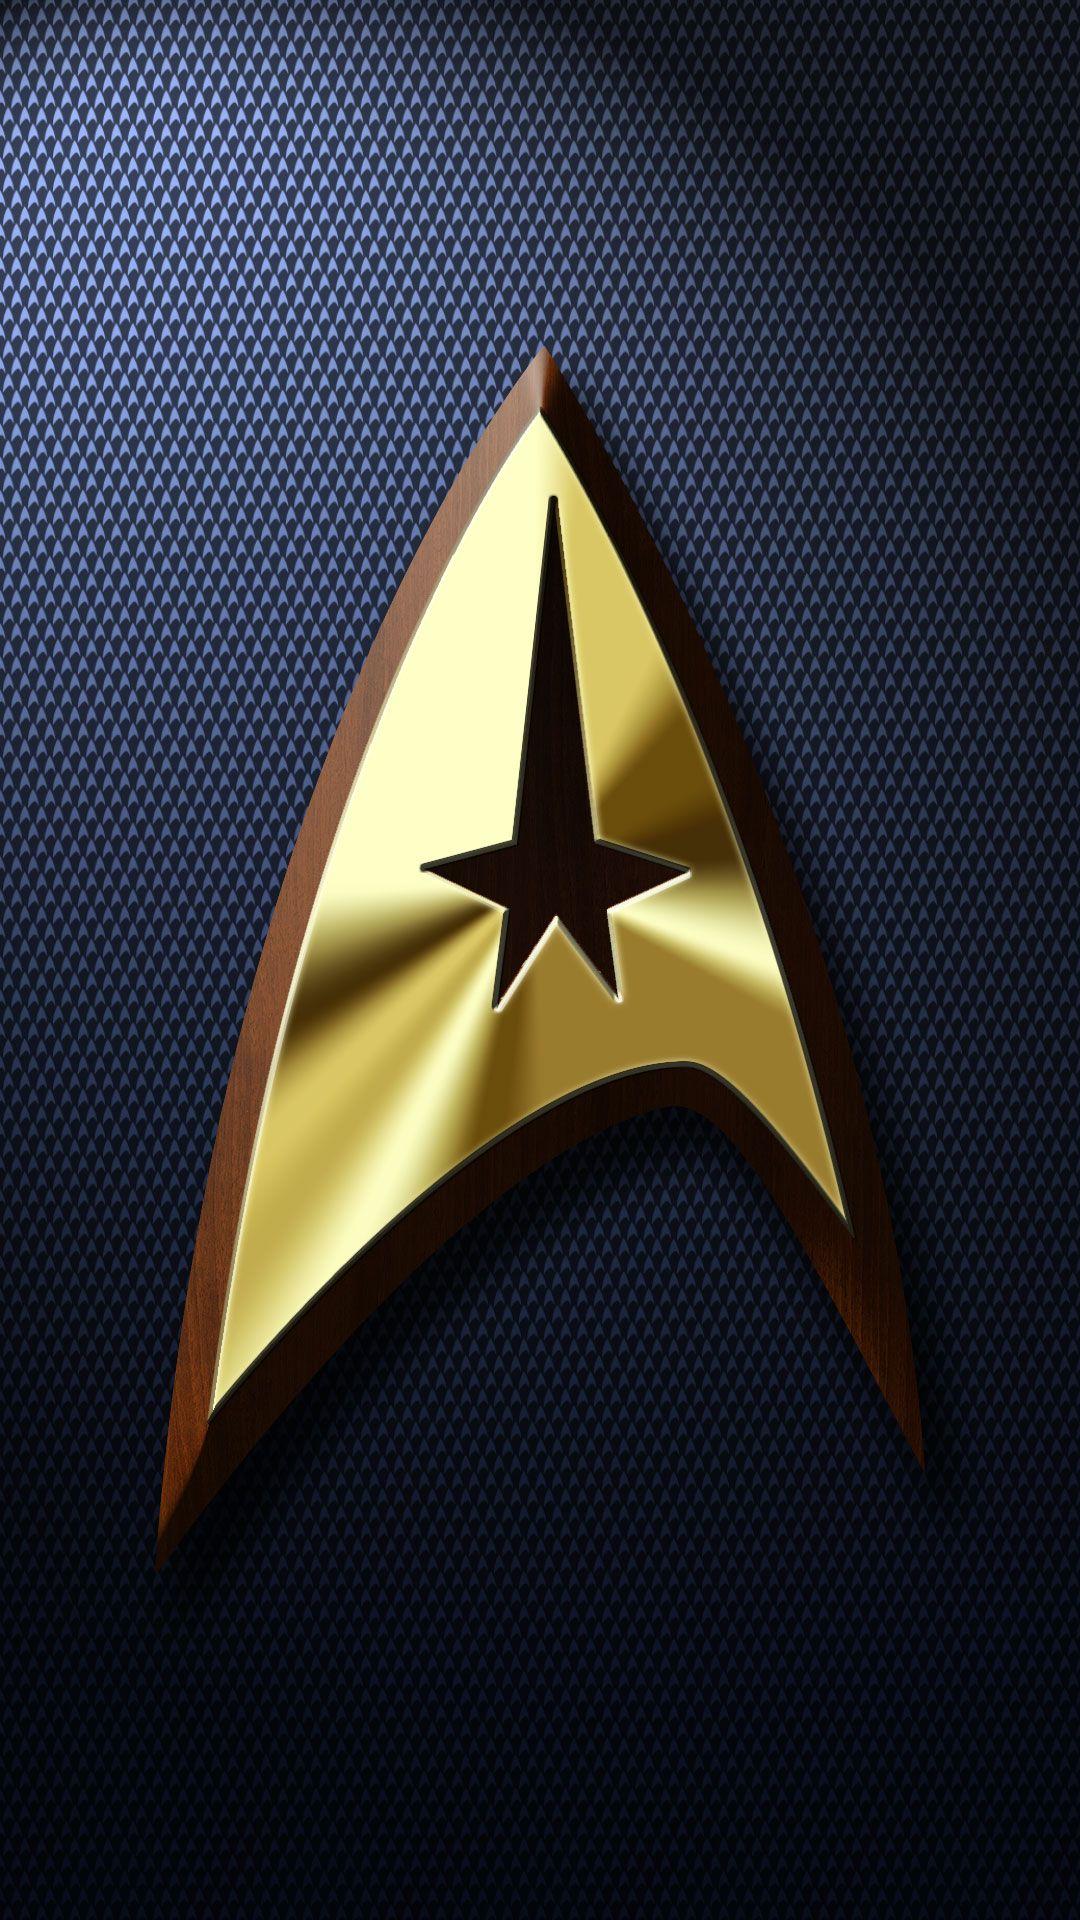 Star Trek Iphone Wallpapers Top Free Star Trek Iphone Backgrounds